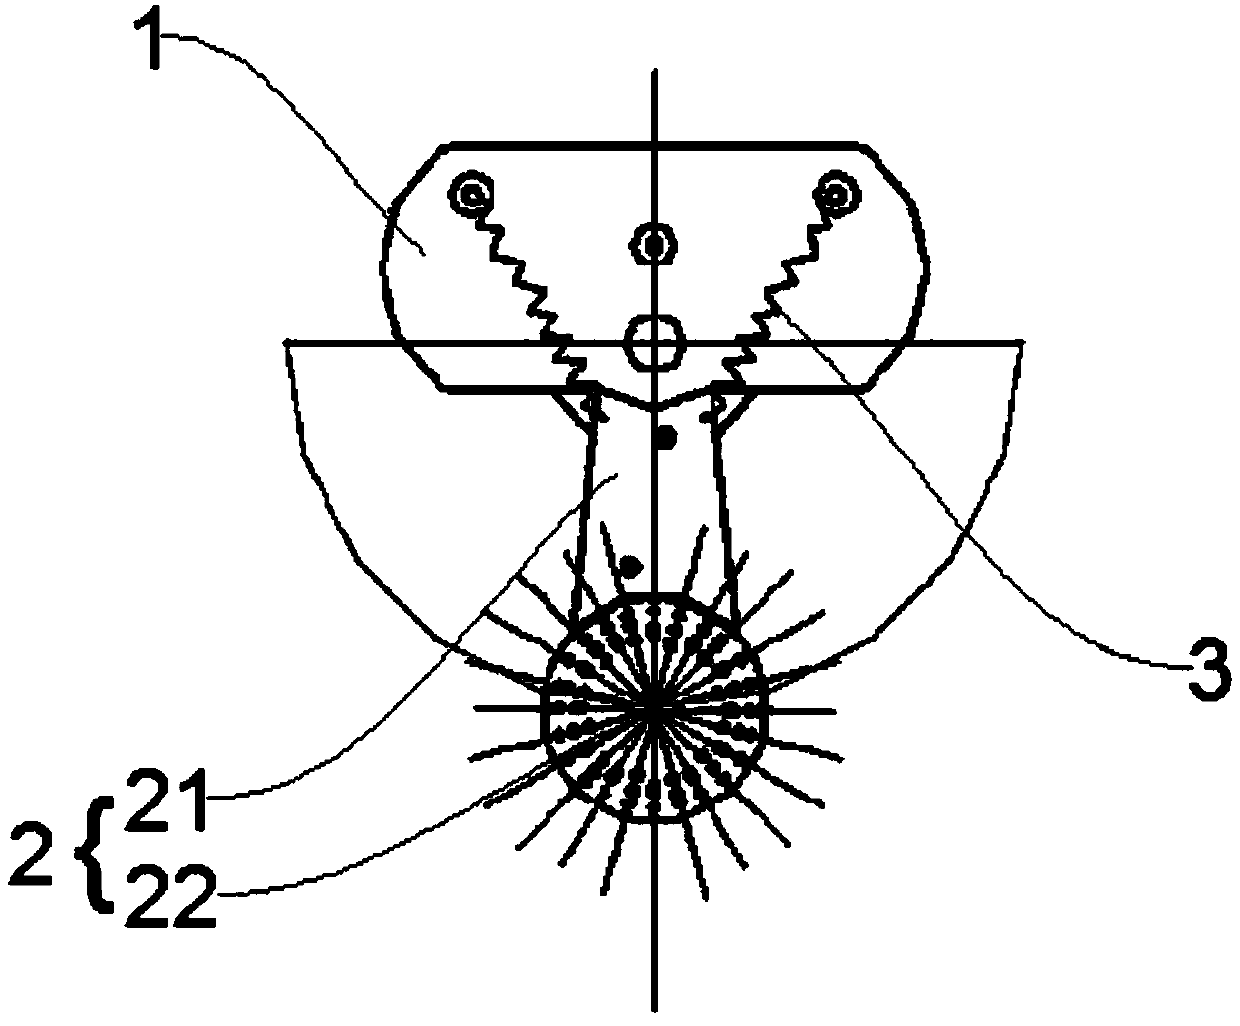 Shoe washing mechanism used for shoe washing machine and shoe washing machine